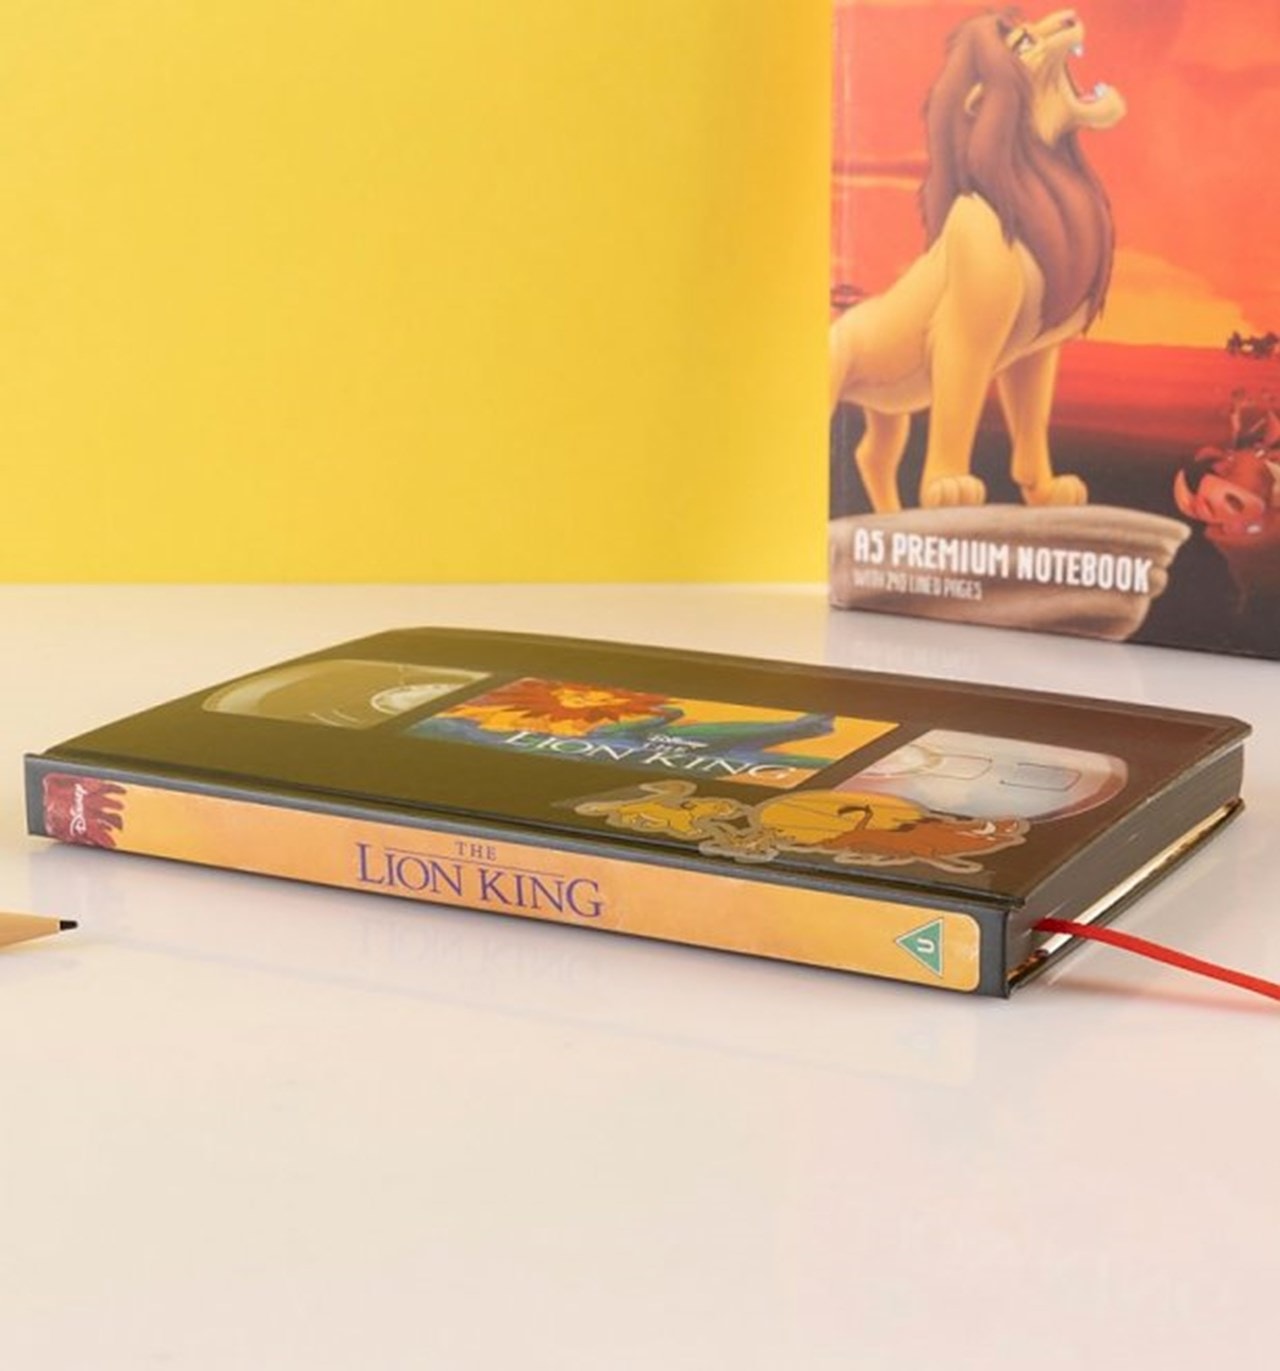 Rei Leão - Notebook Premium VHS.